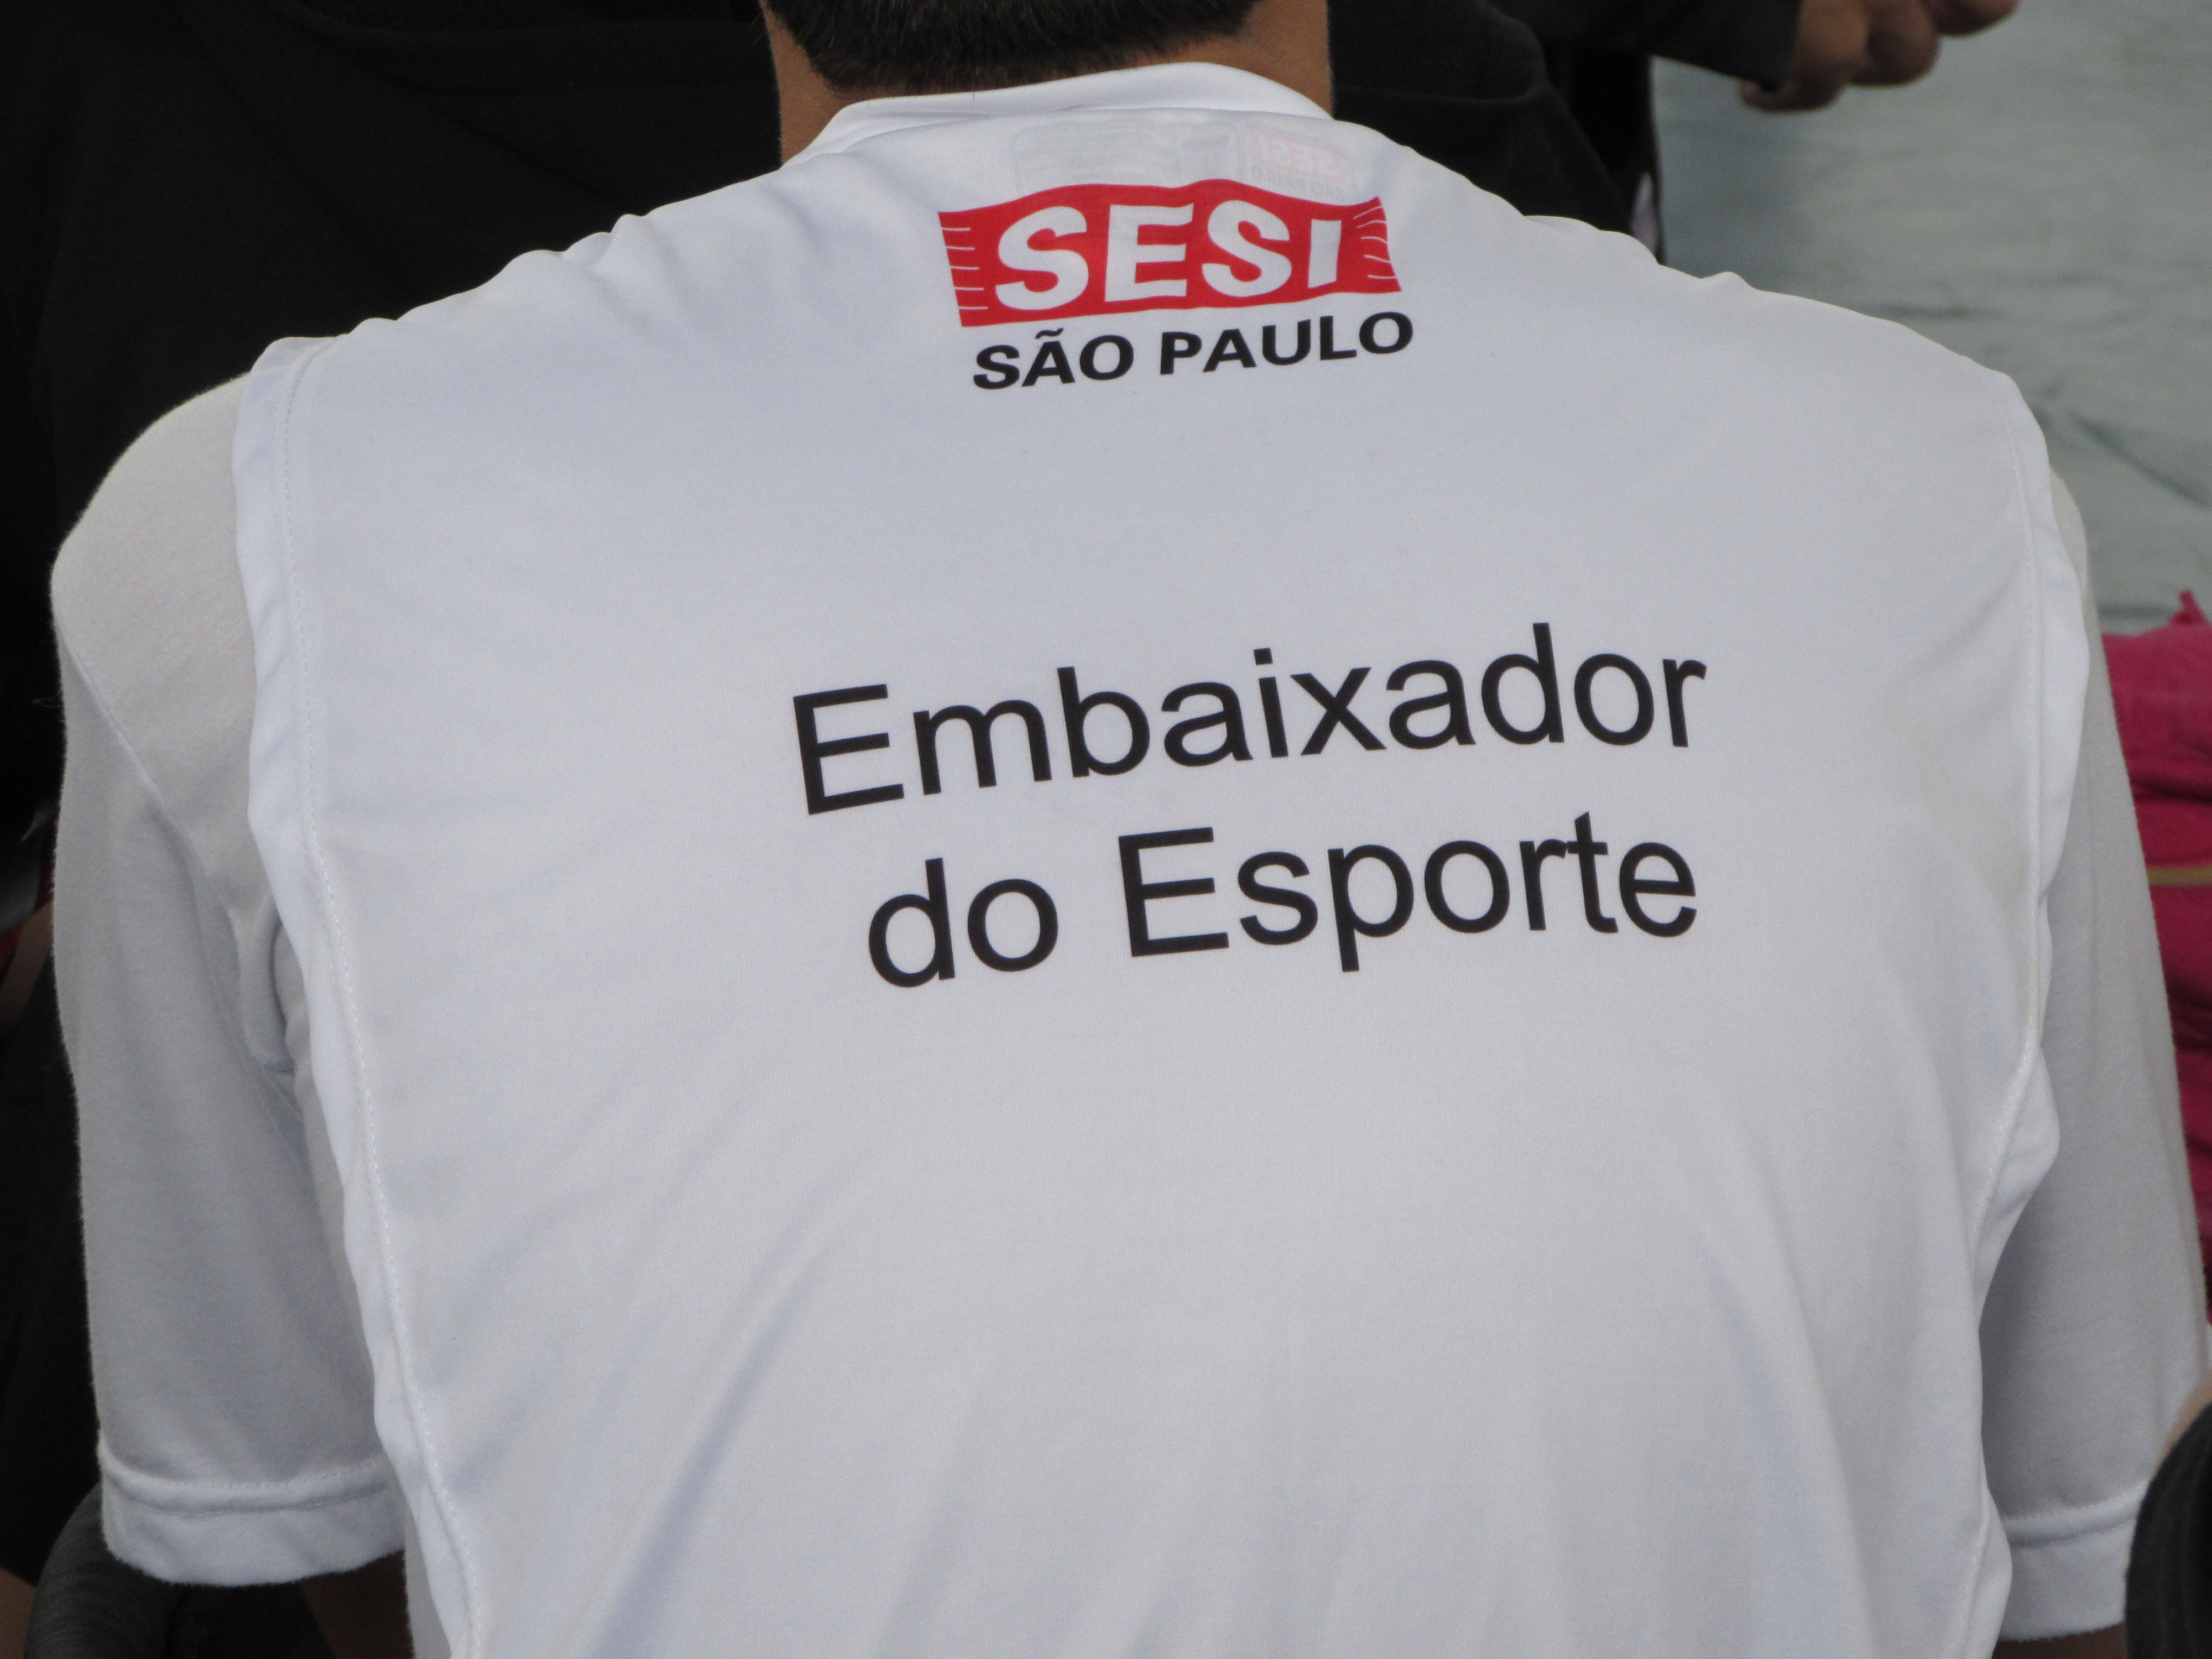 Campeões olímpicos do vôlei brasileiro visitam o Instituto Canção Nova (18)